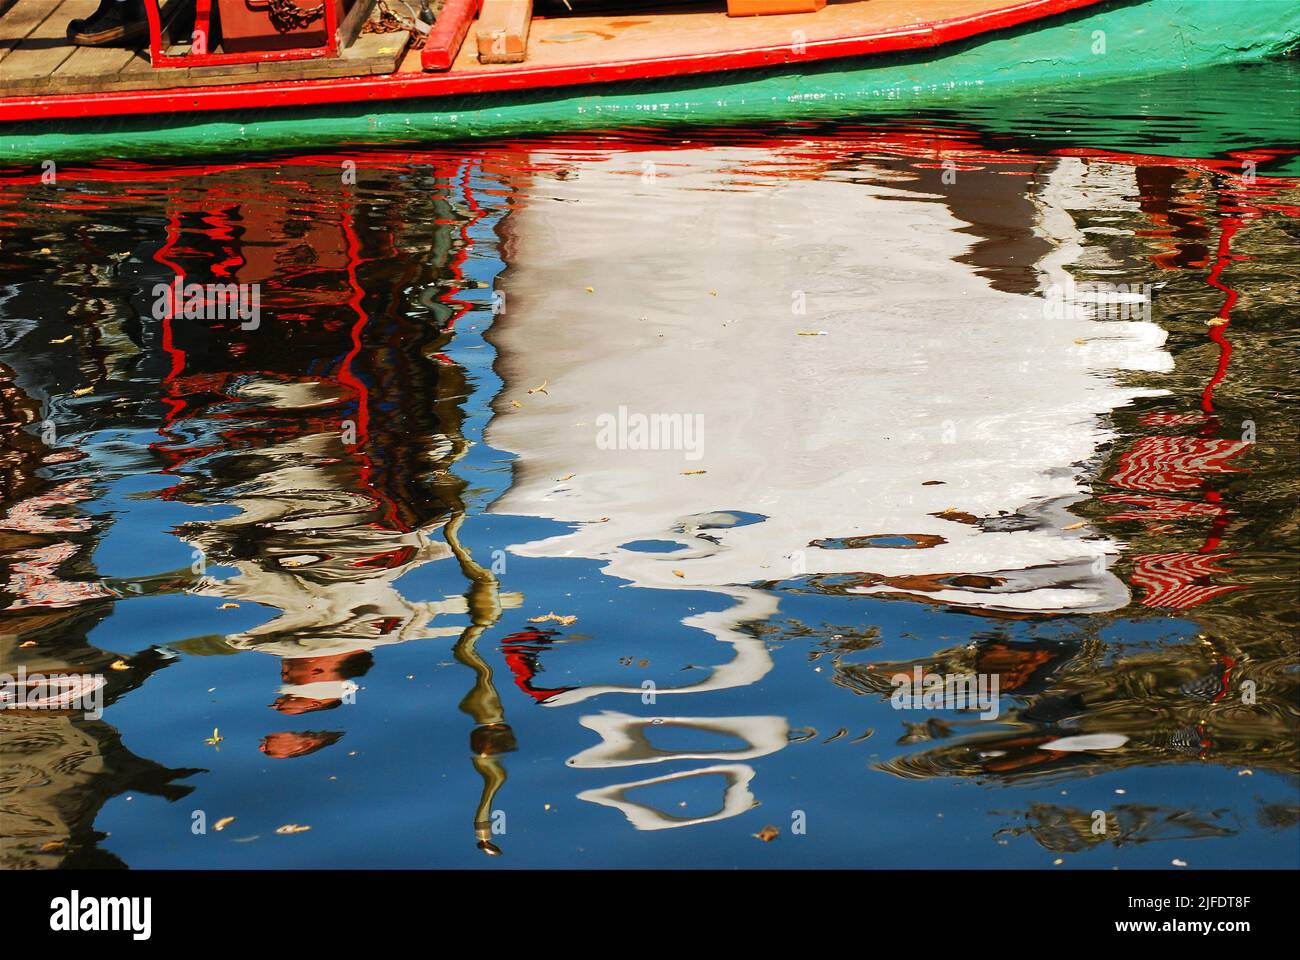 Die Spiegelungen eines Schwanenbootes im Boston Publik Garden, in der Nähe des Boston Common, erzeugen ein abstraktes Bild in den Wellen des Wassers der Lagune Stockfoto